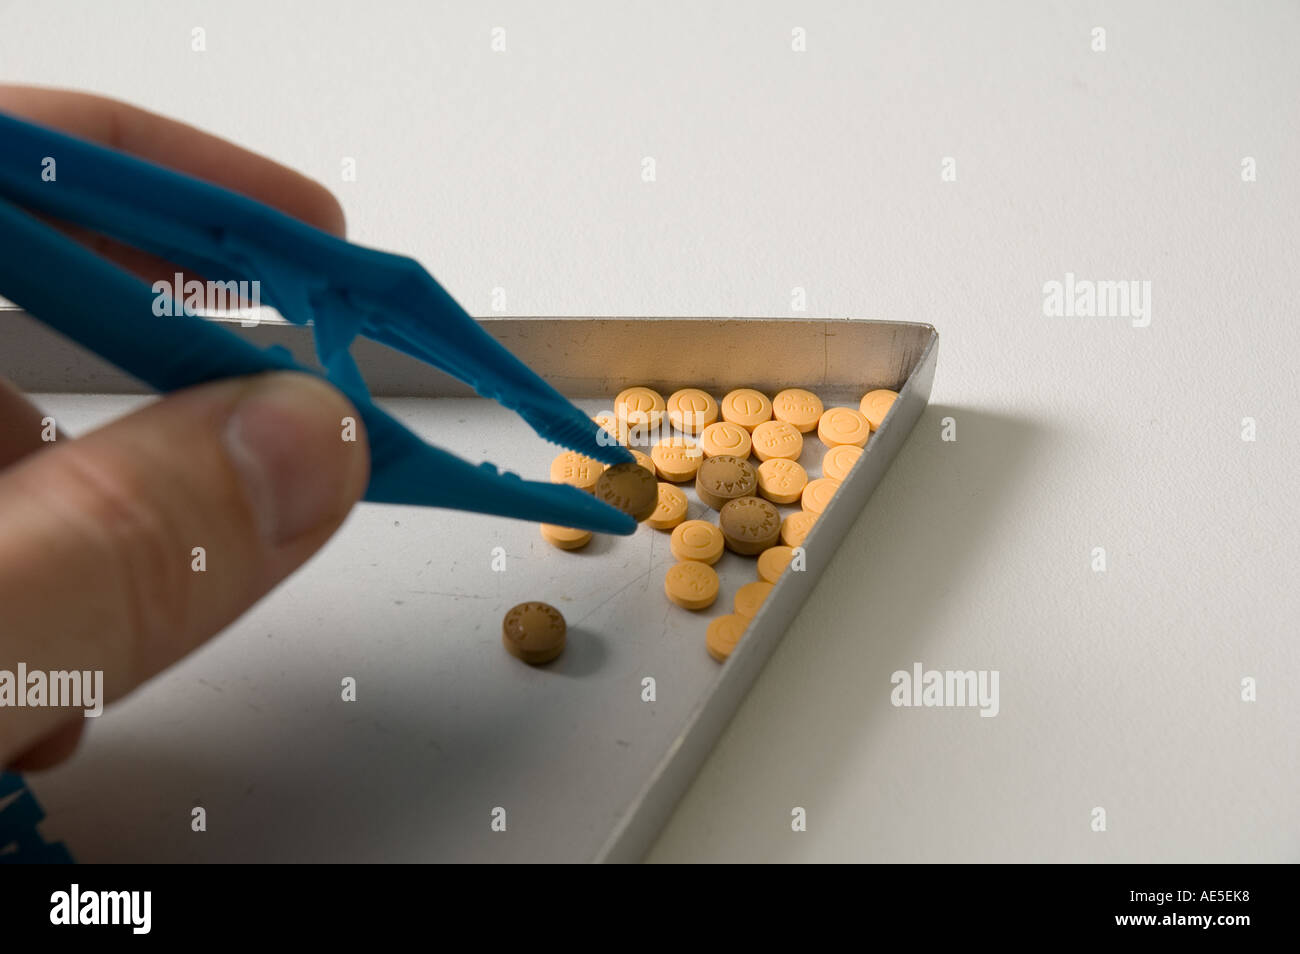 Ein Mann verwendet Tweesers, um verschiedene Tabletten aus einer Zählung Dreieck herausgreifen Stockfoto